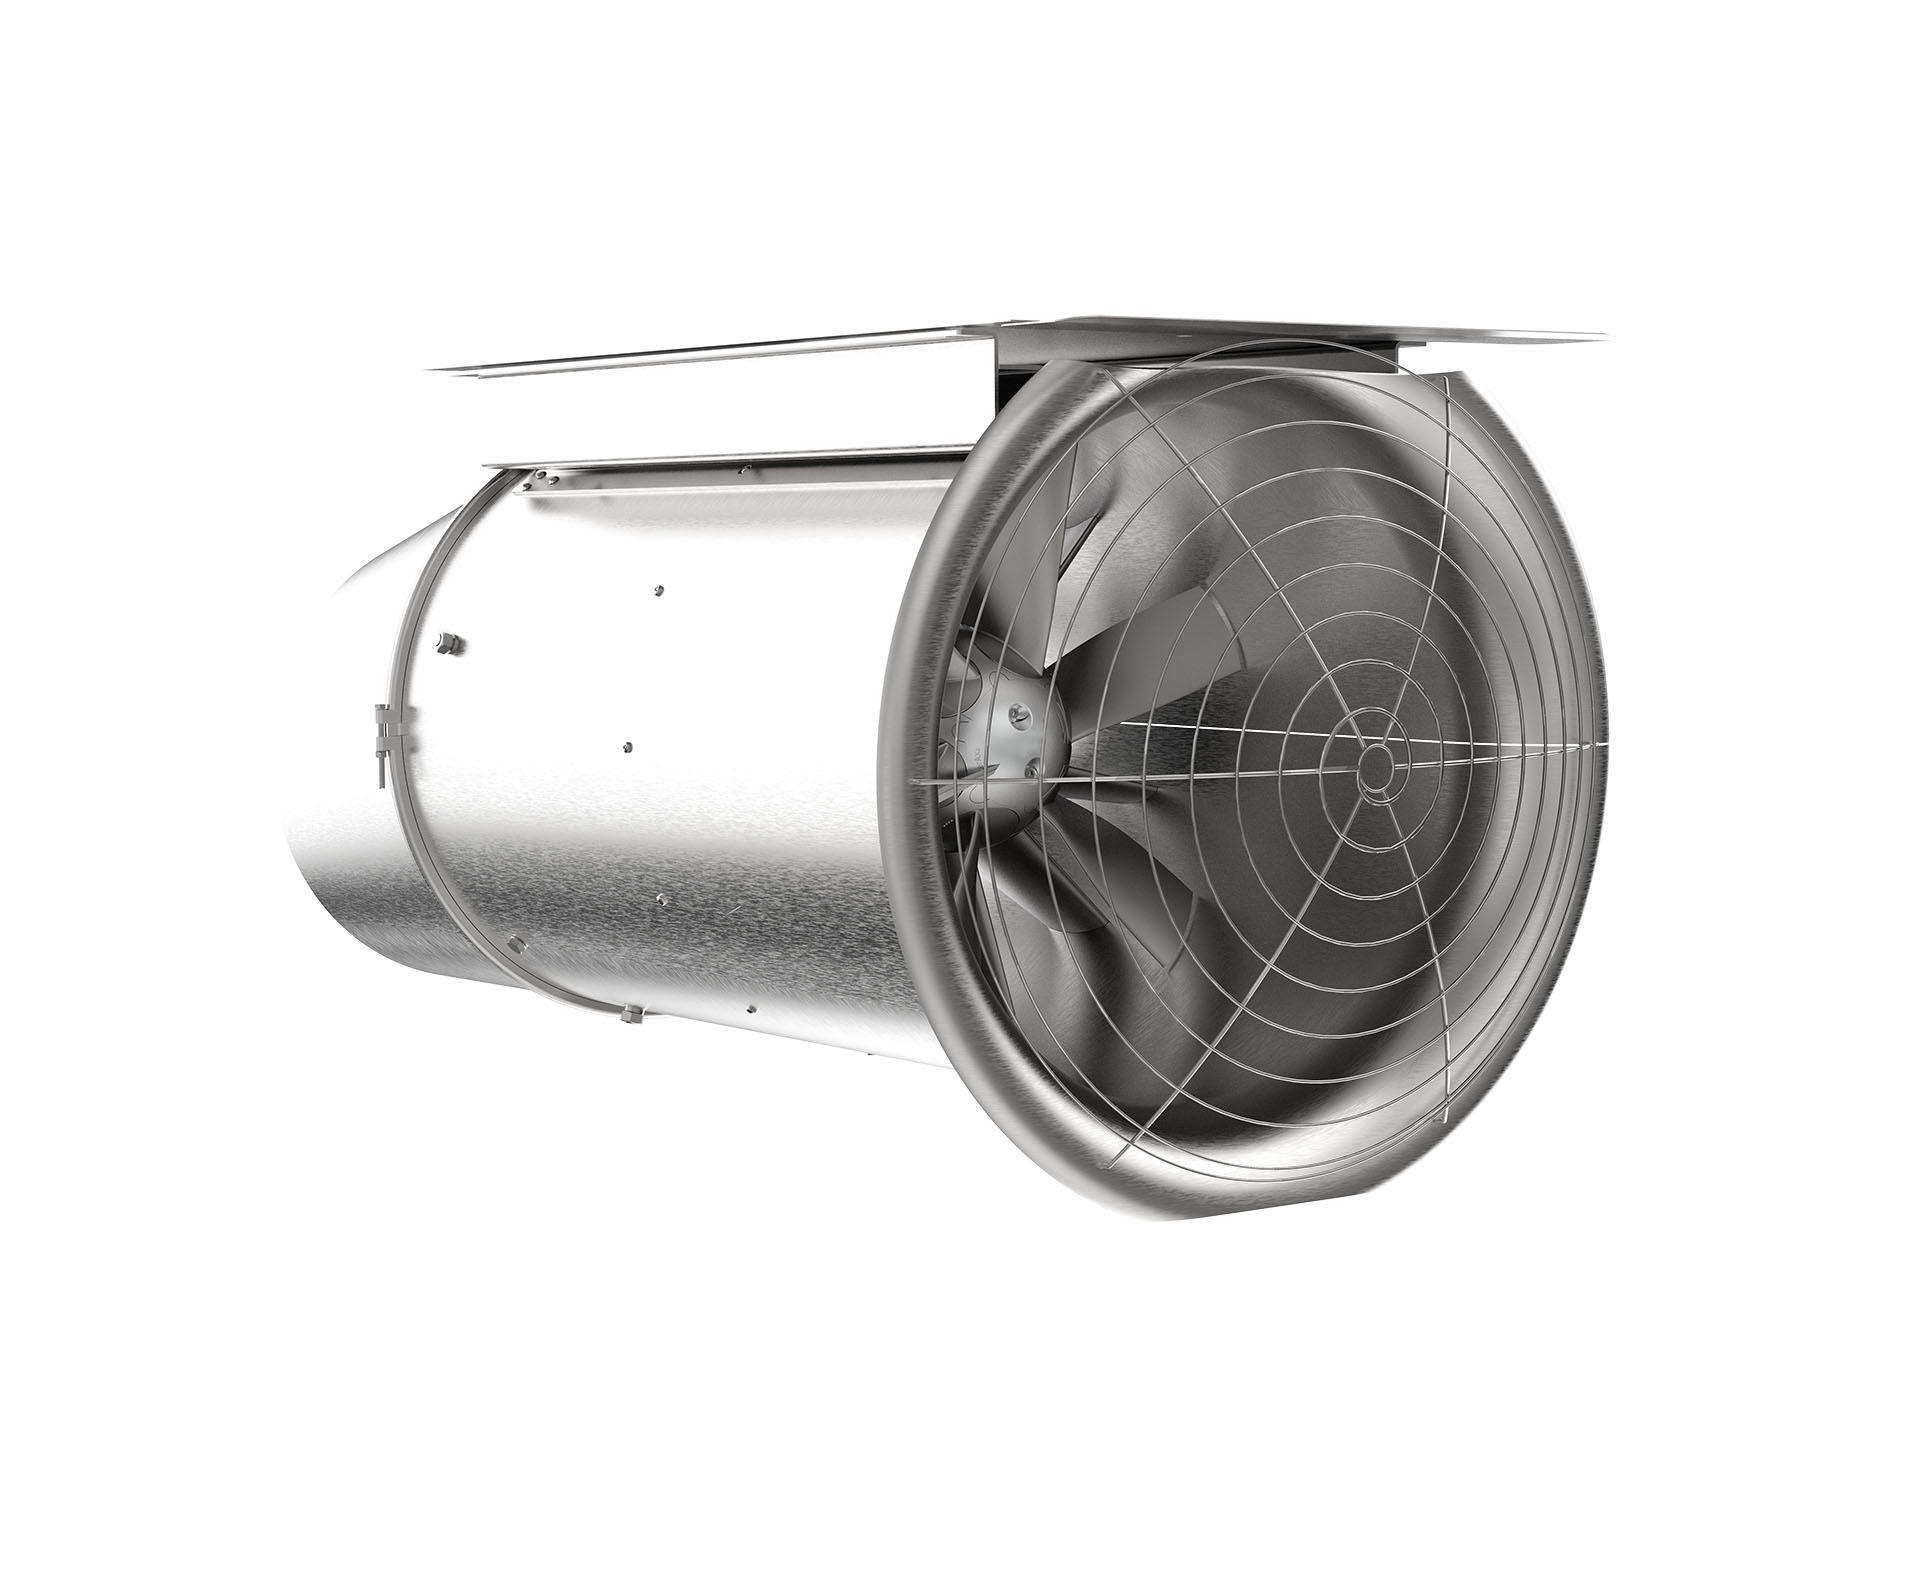 IJC II Series - Induced Jet Fan